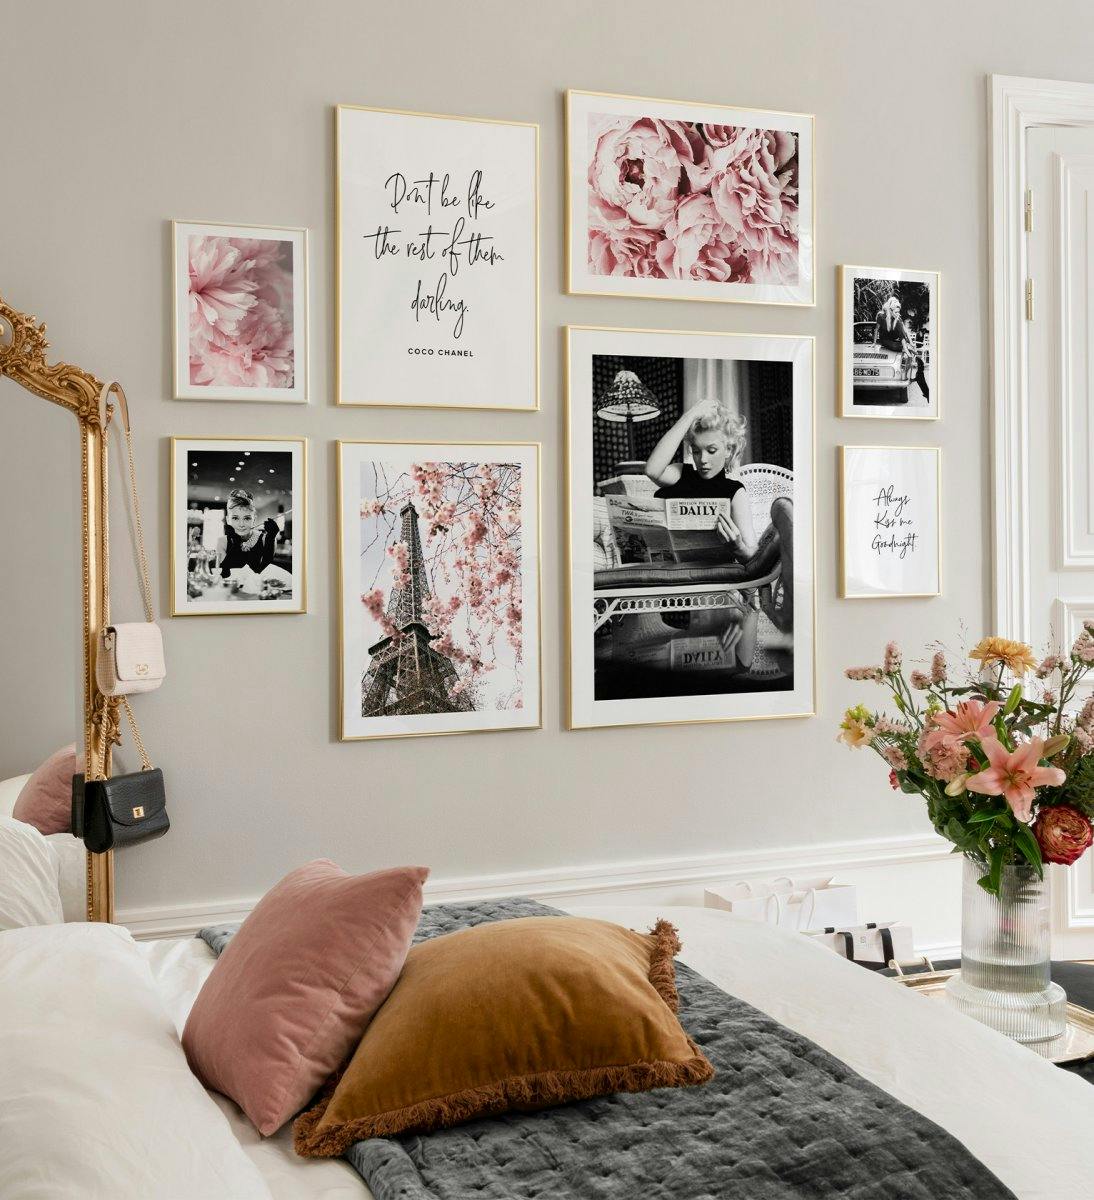 Décoration murale tendance avec affiches florales roses, affiches de citations et de célébrités avec cadres dorés pour le salon